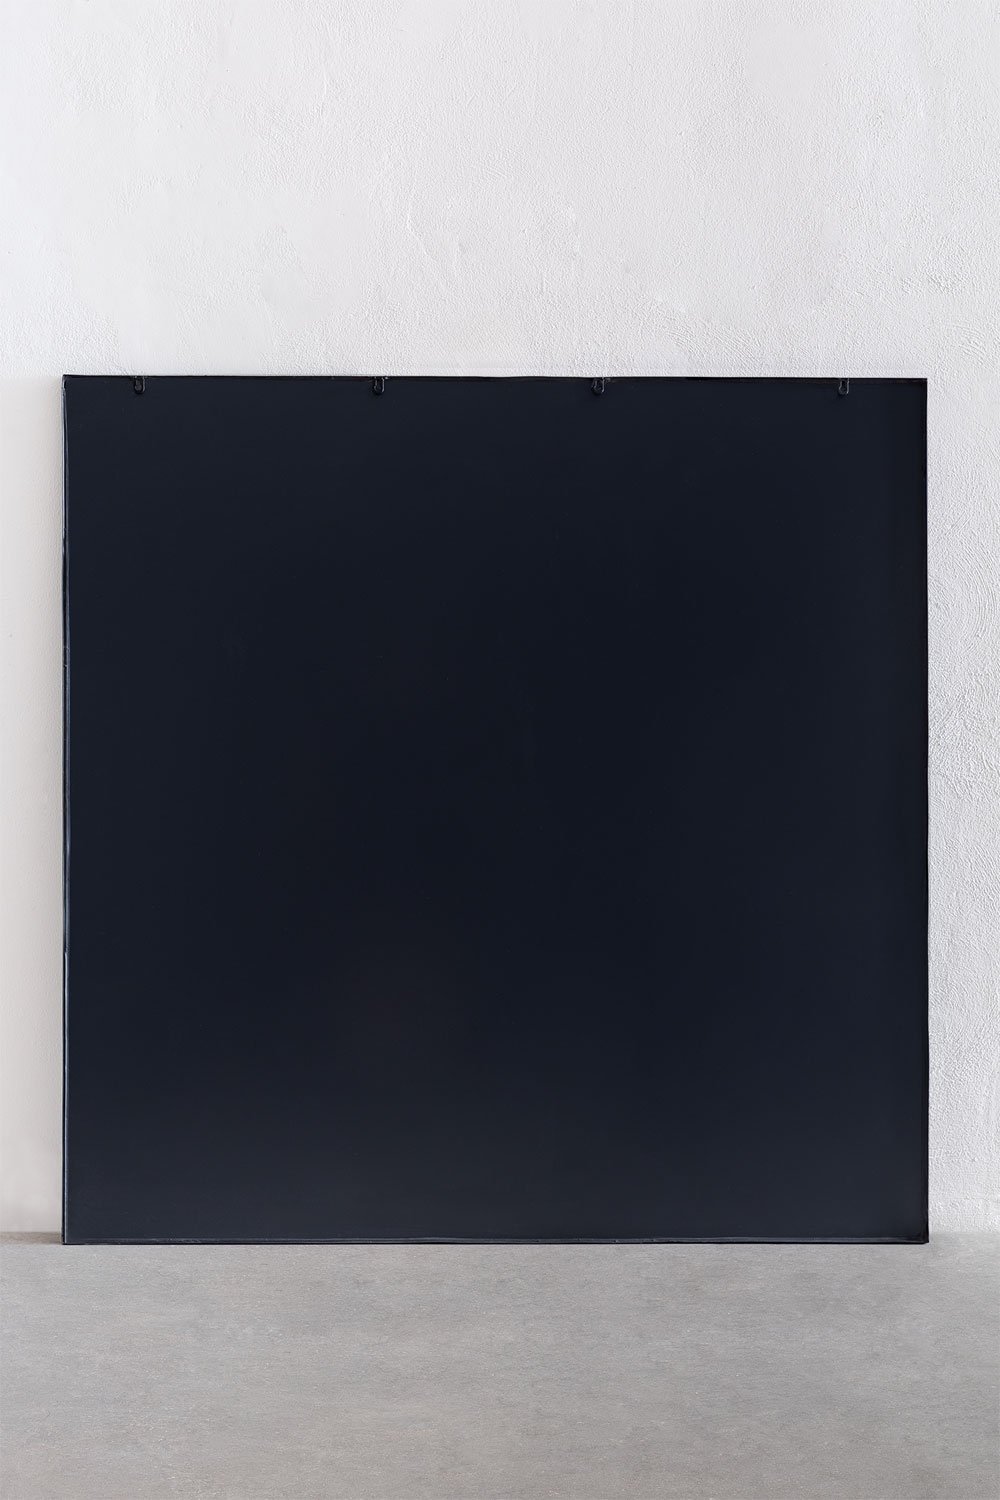 Specchio finestra in metallo nero, 122x122 cm Beckett